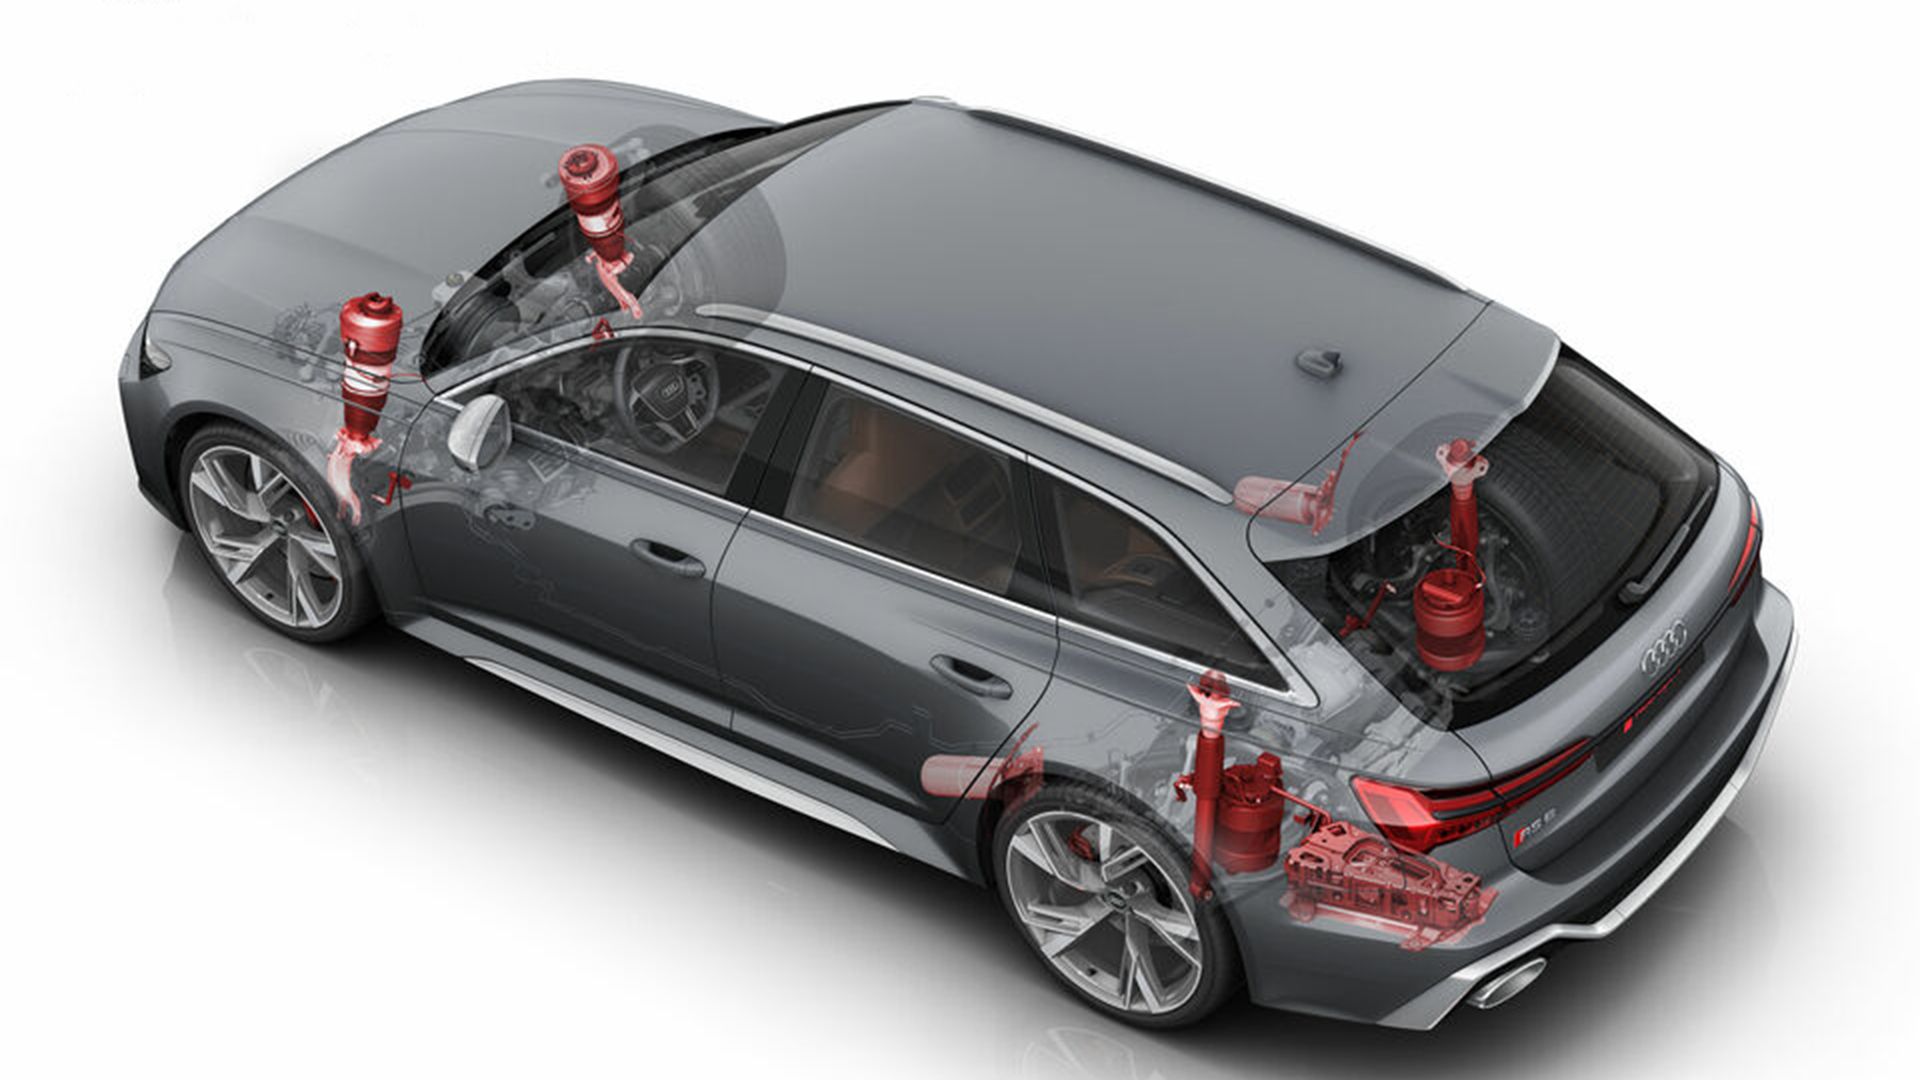 Audi RS6 Avant suspension rear view